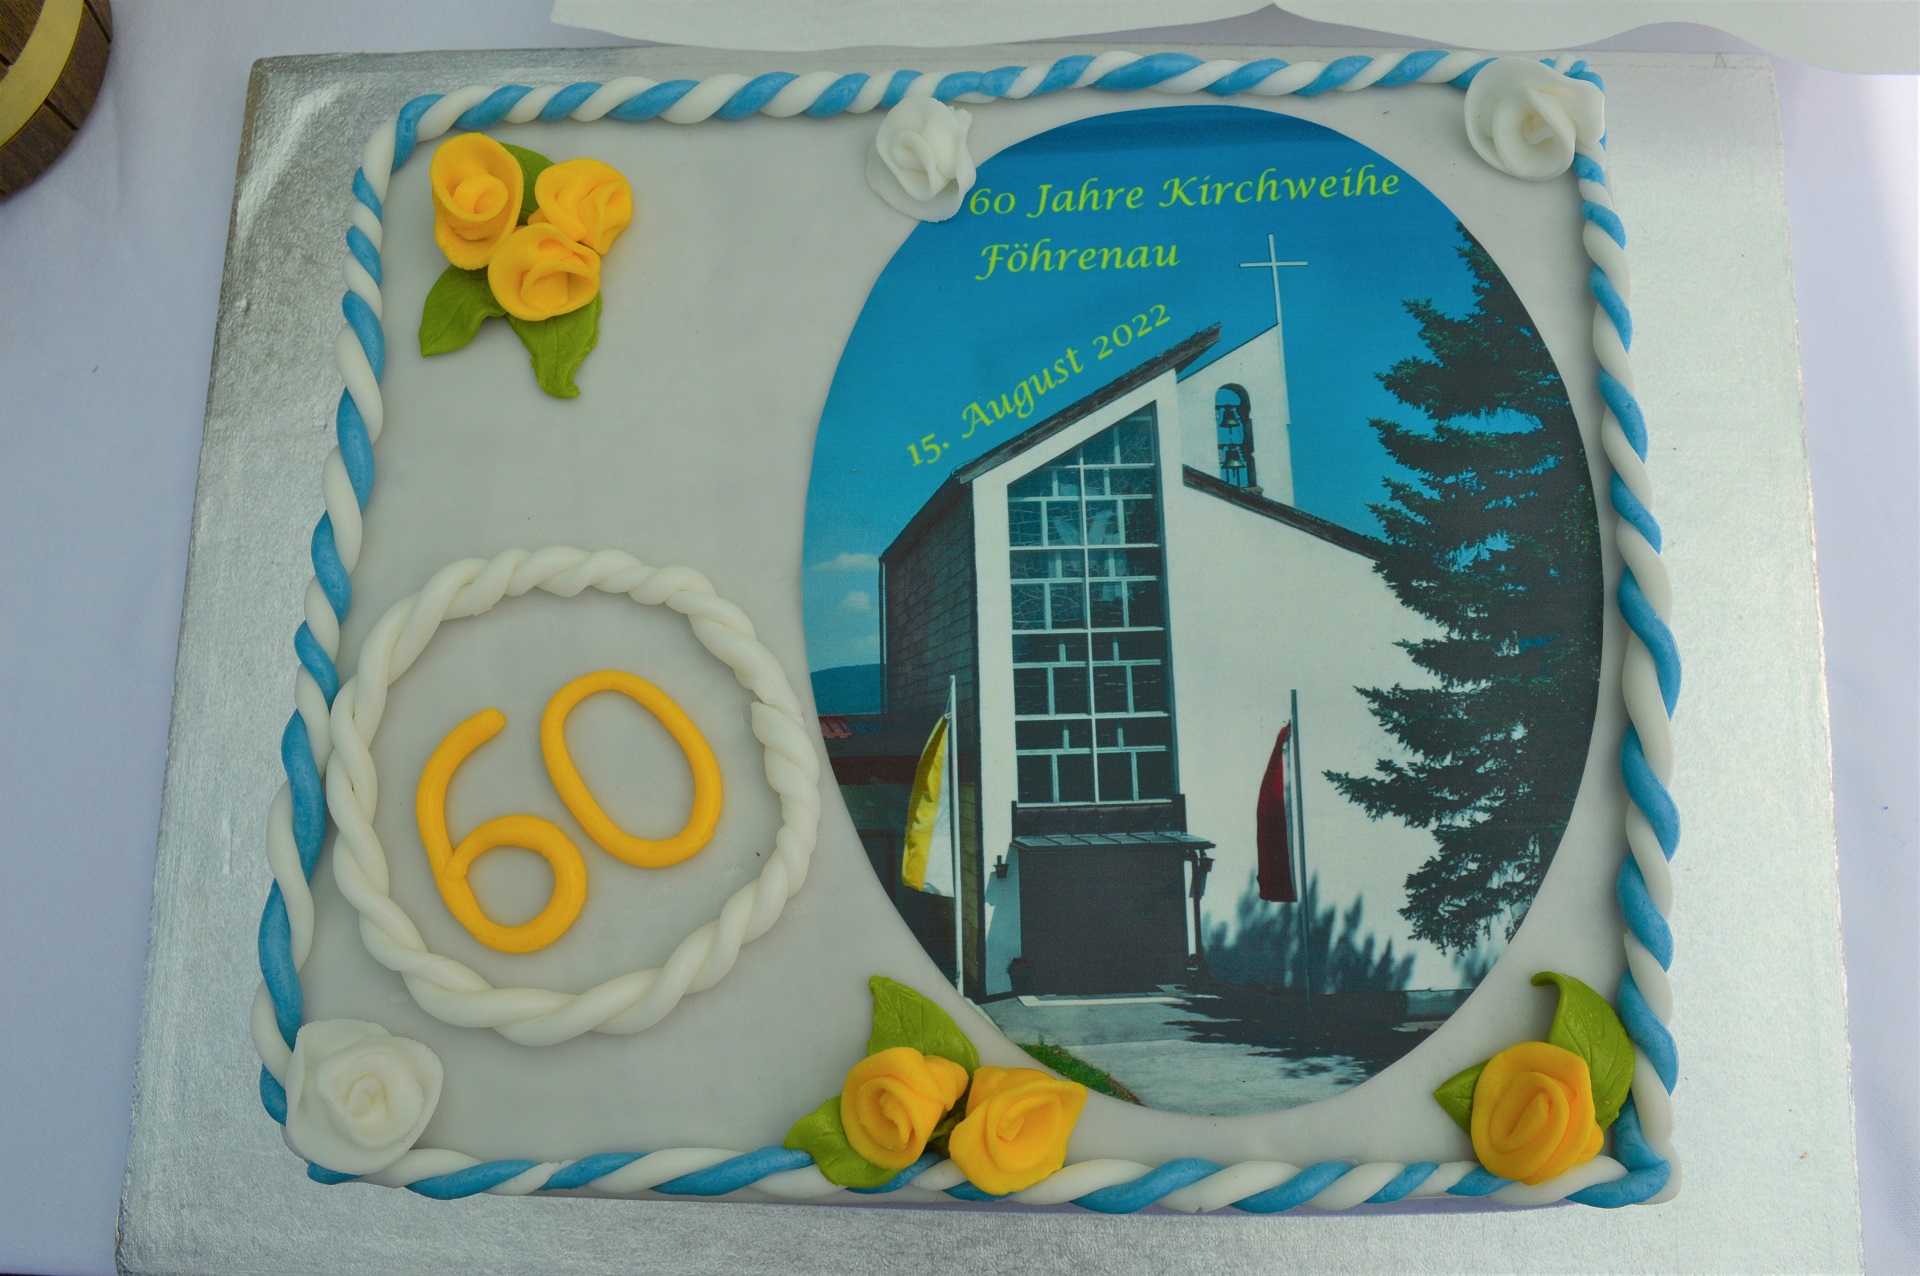 Kirche Föhrenau feiert 60-Jahre-Jubiläum